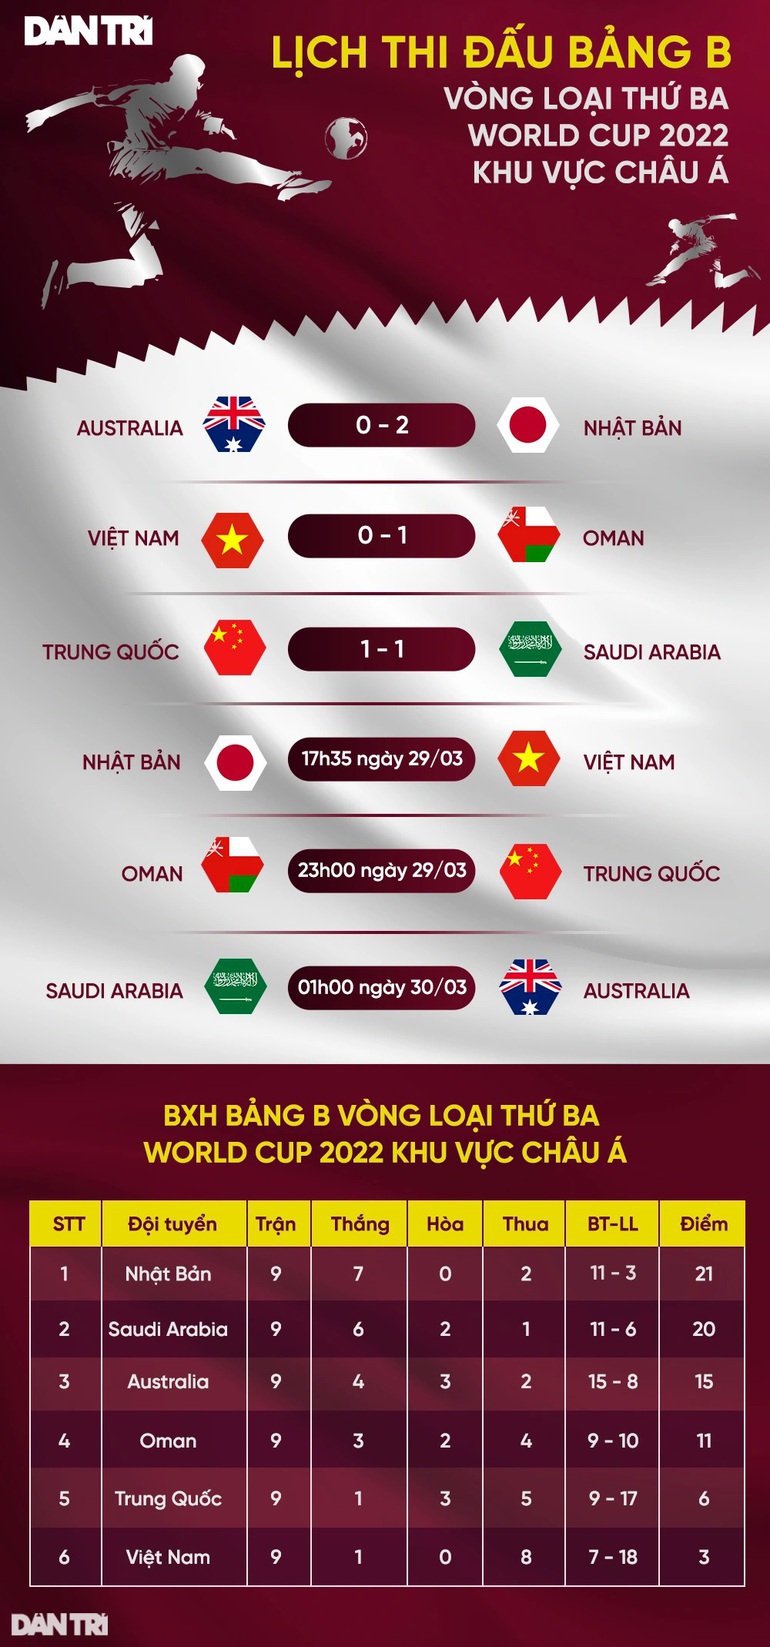 Nhật Bản sẽ không để mất mặt trước đội tuyển Việt Nam - 3